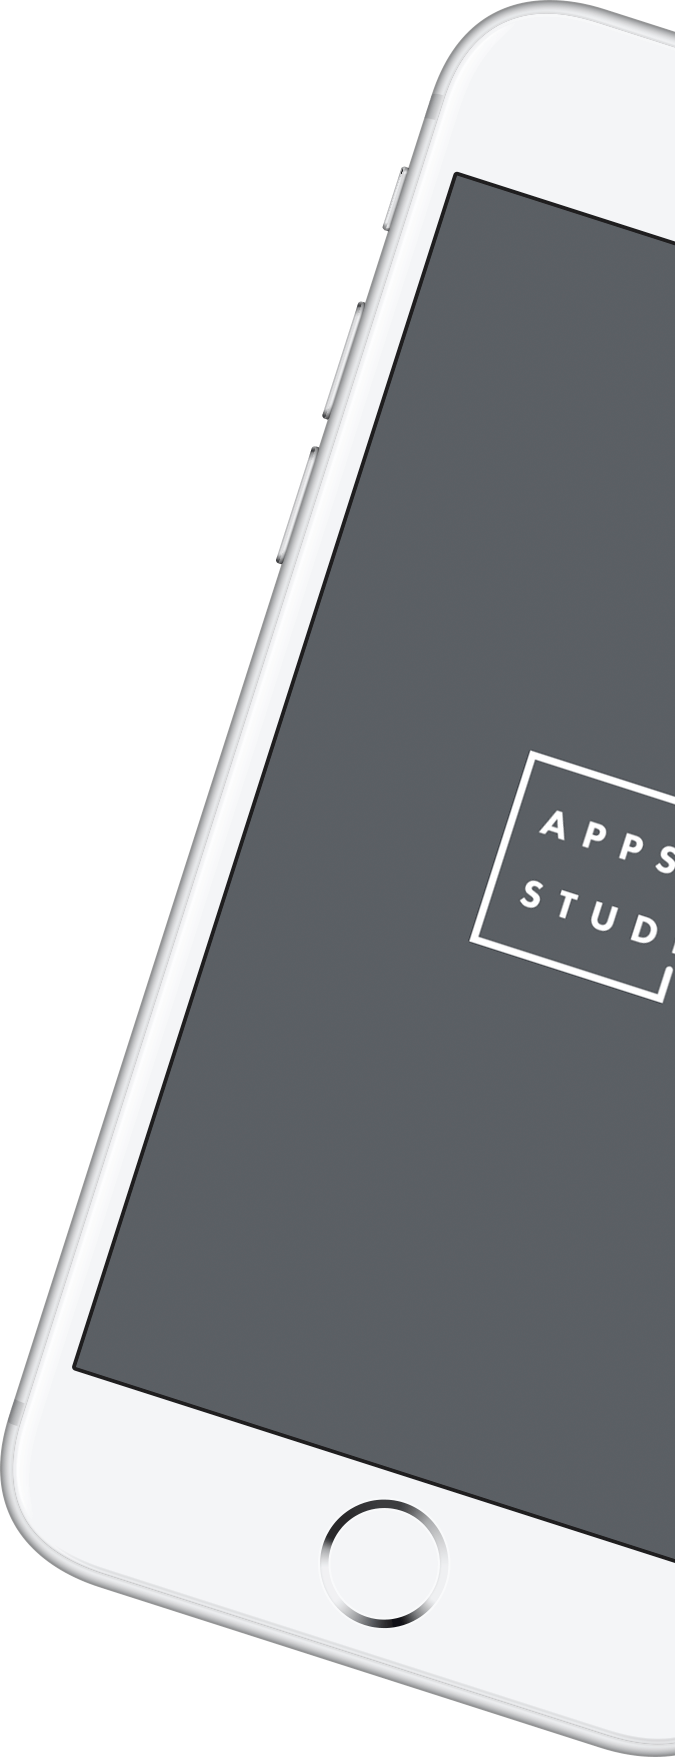 Мобильное приложение APPsStudio бриф на разработку приложения скрин загрузочный экран splash фото 2